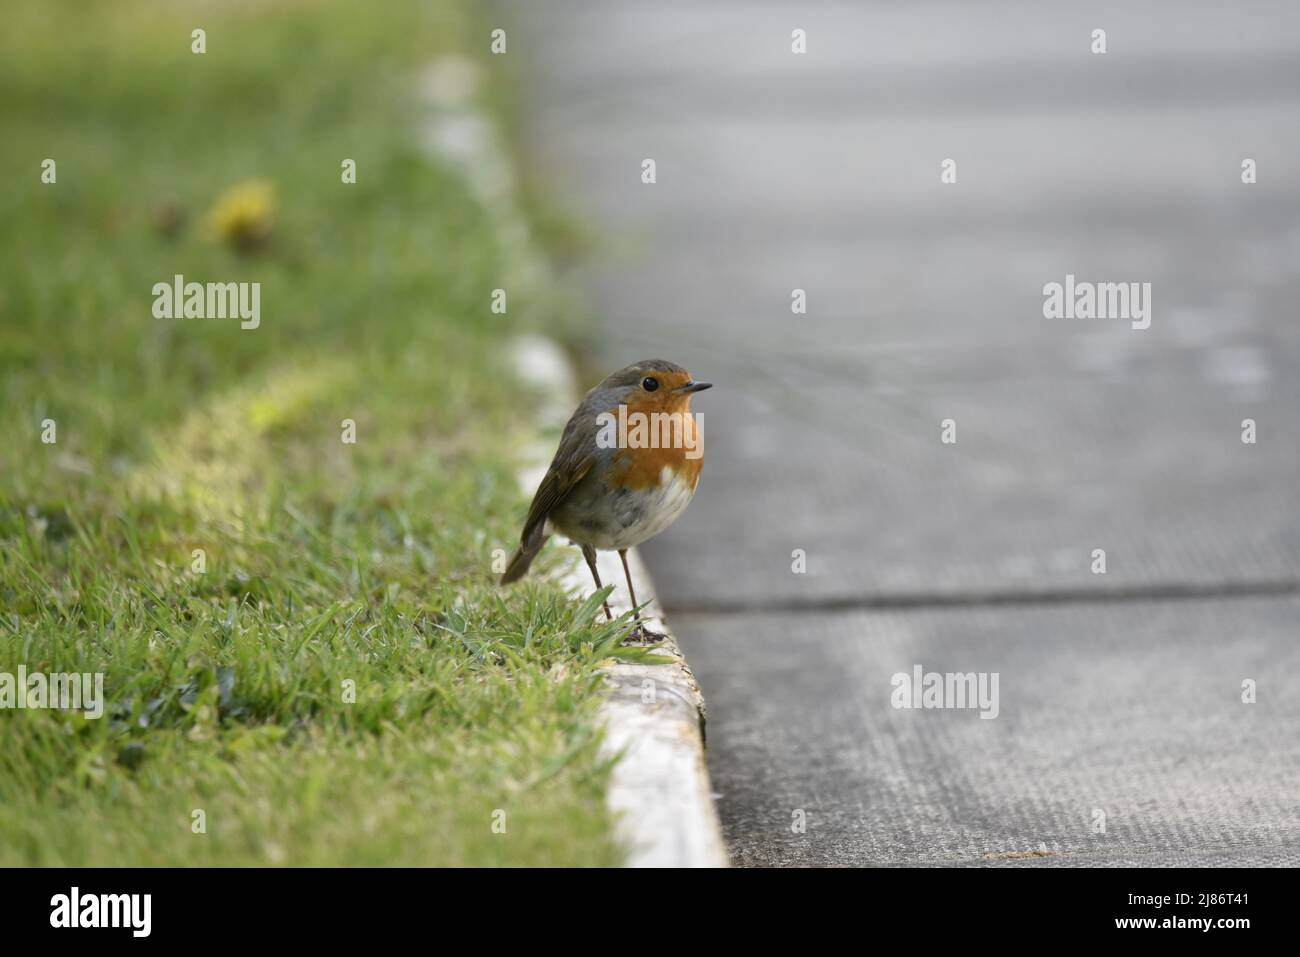 European Robin (Erithacus rubecula) De pie en el perfil derecho en un bordillo en el borde de un verge de hierba a la izquierda Primer plano de la imagen, mirando a la derecha, Reino Unido Foto de stock